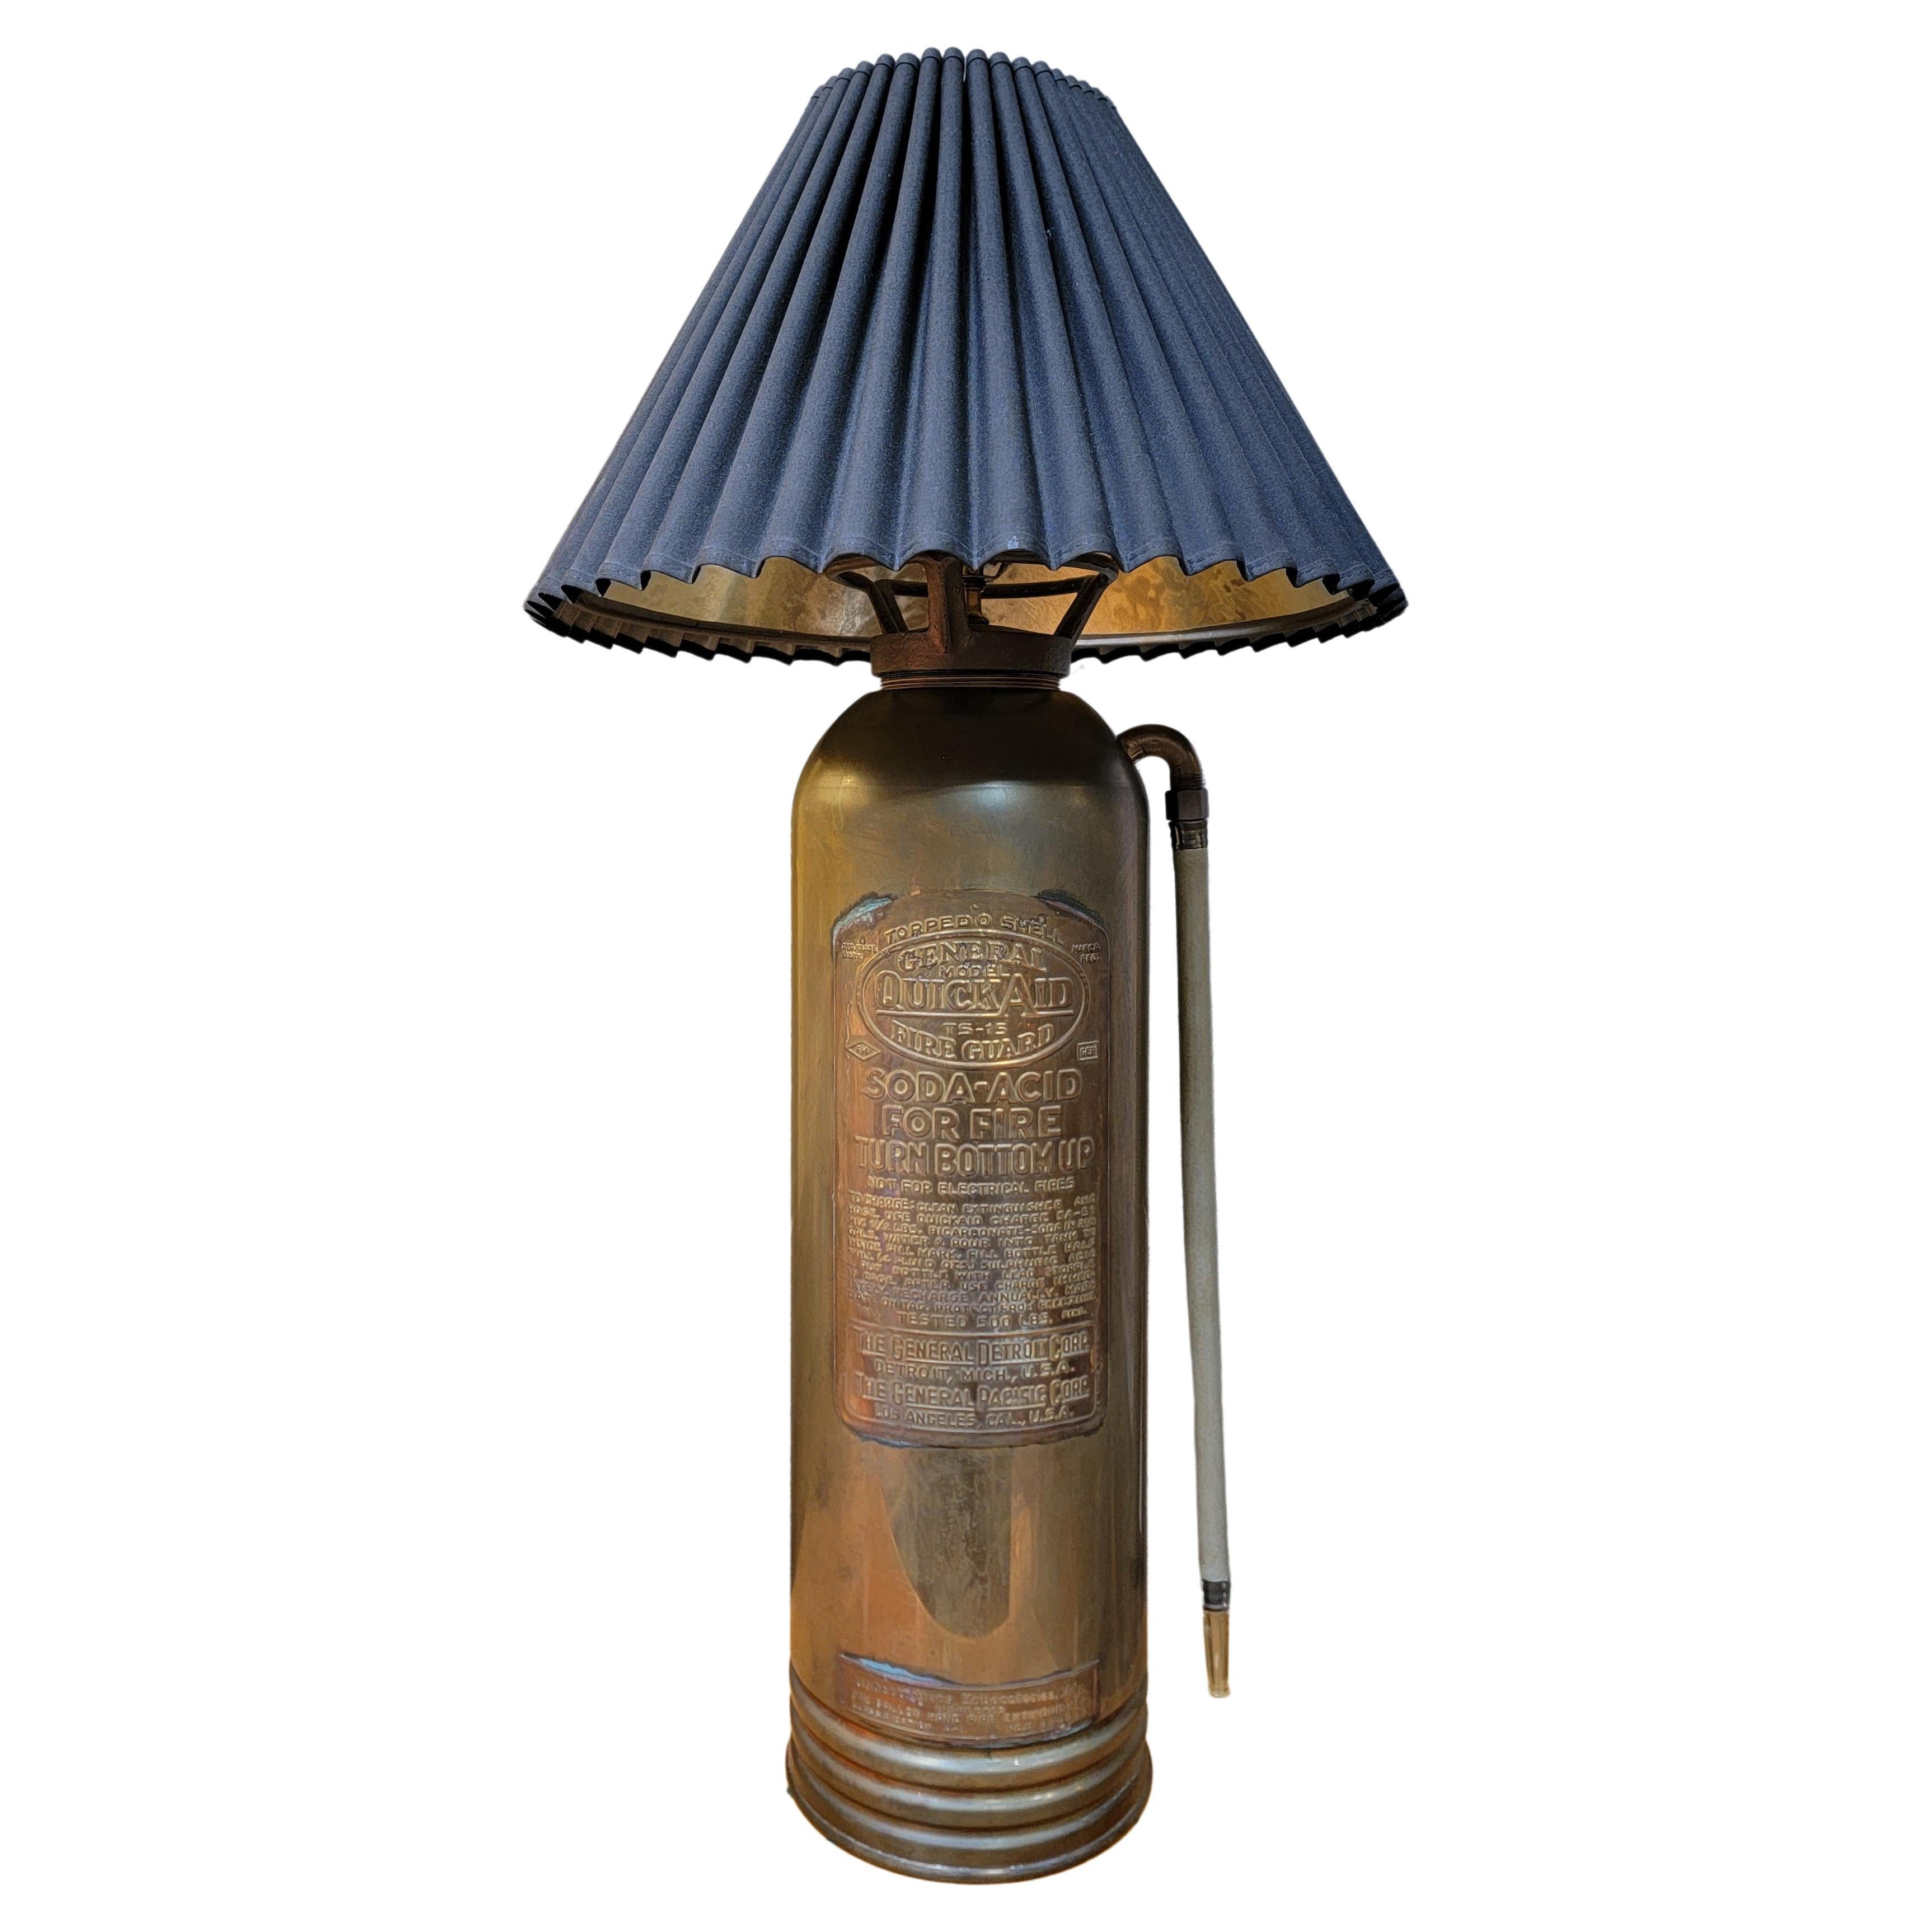 Feuerschutzlampe aus Messing, frühes 20. Jahrhundert